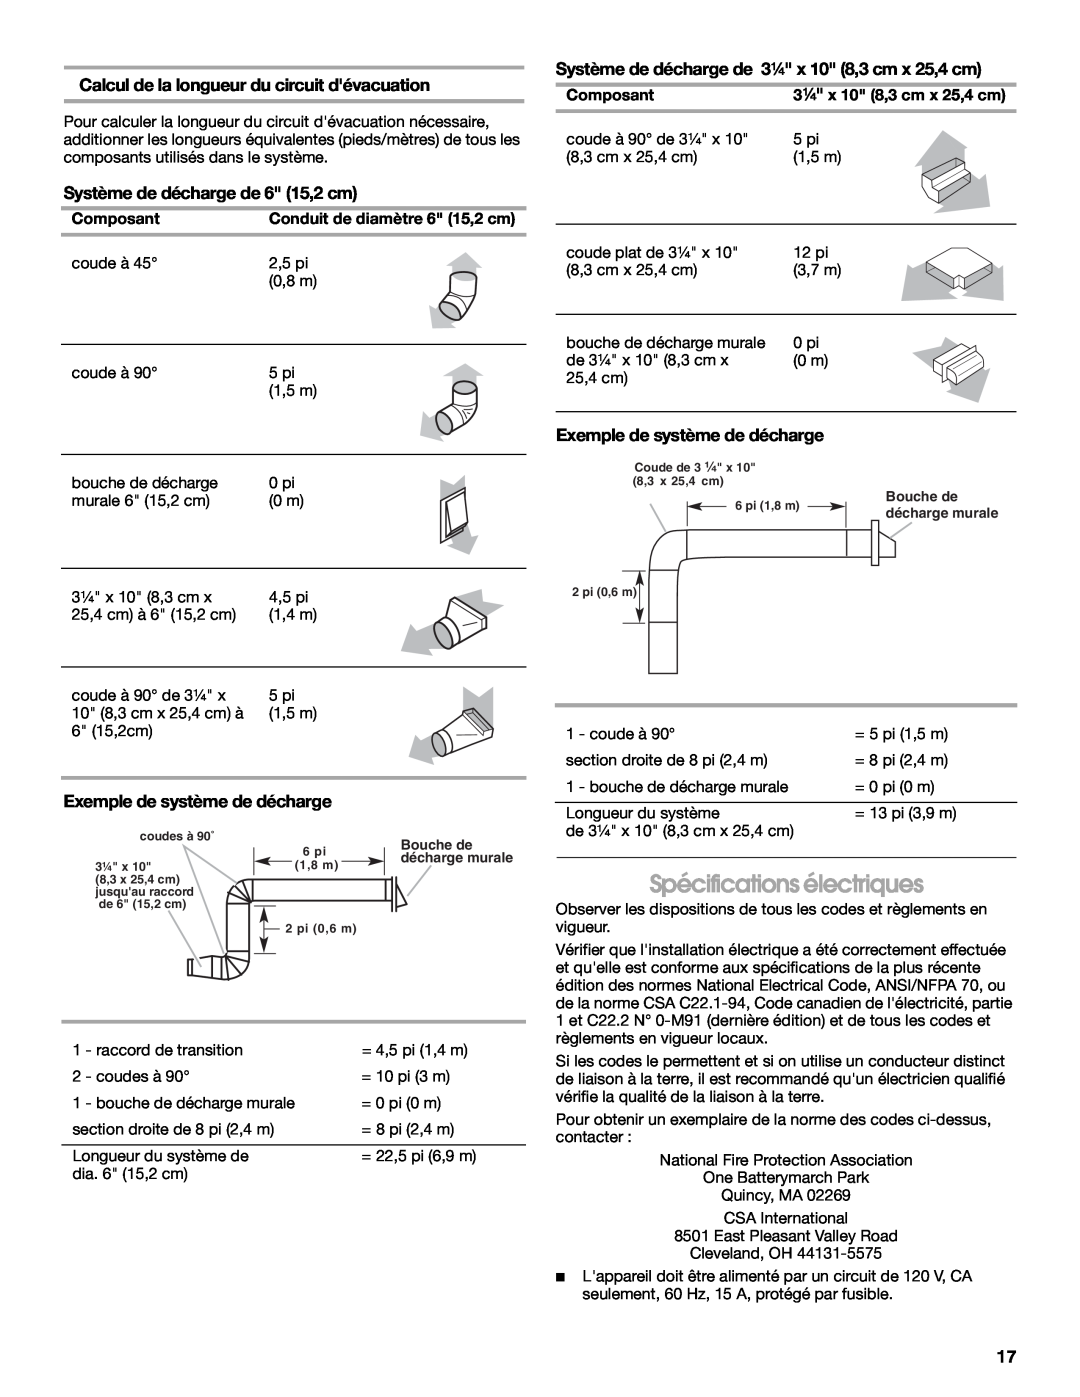 Maytag 99043751D Spécifications électriques, Calcul de la longueur du circuit dévacuation, Exemple de système de décharge 